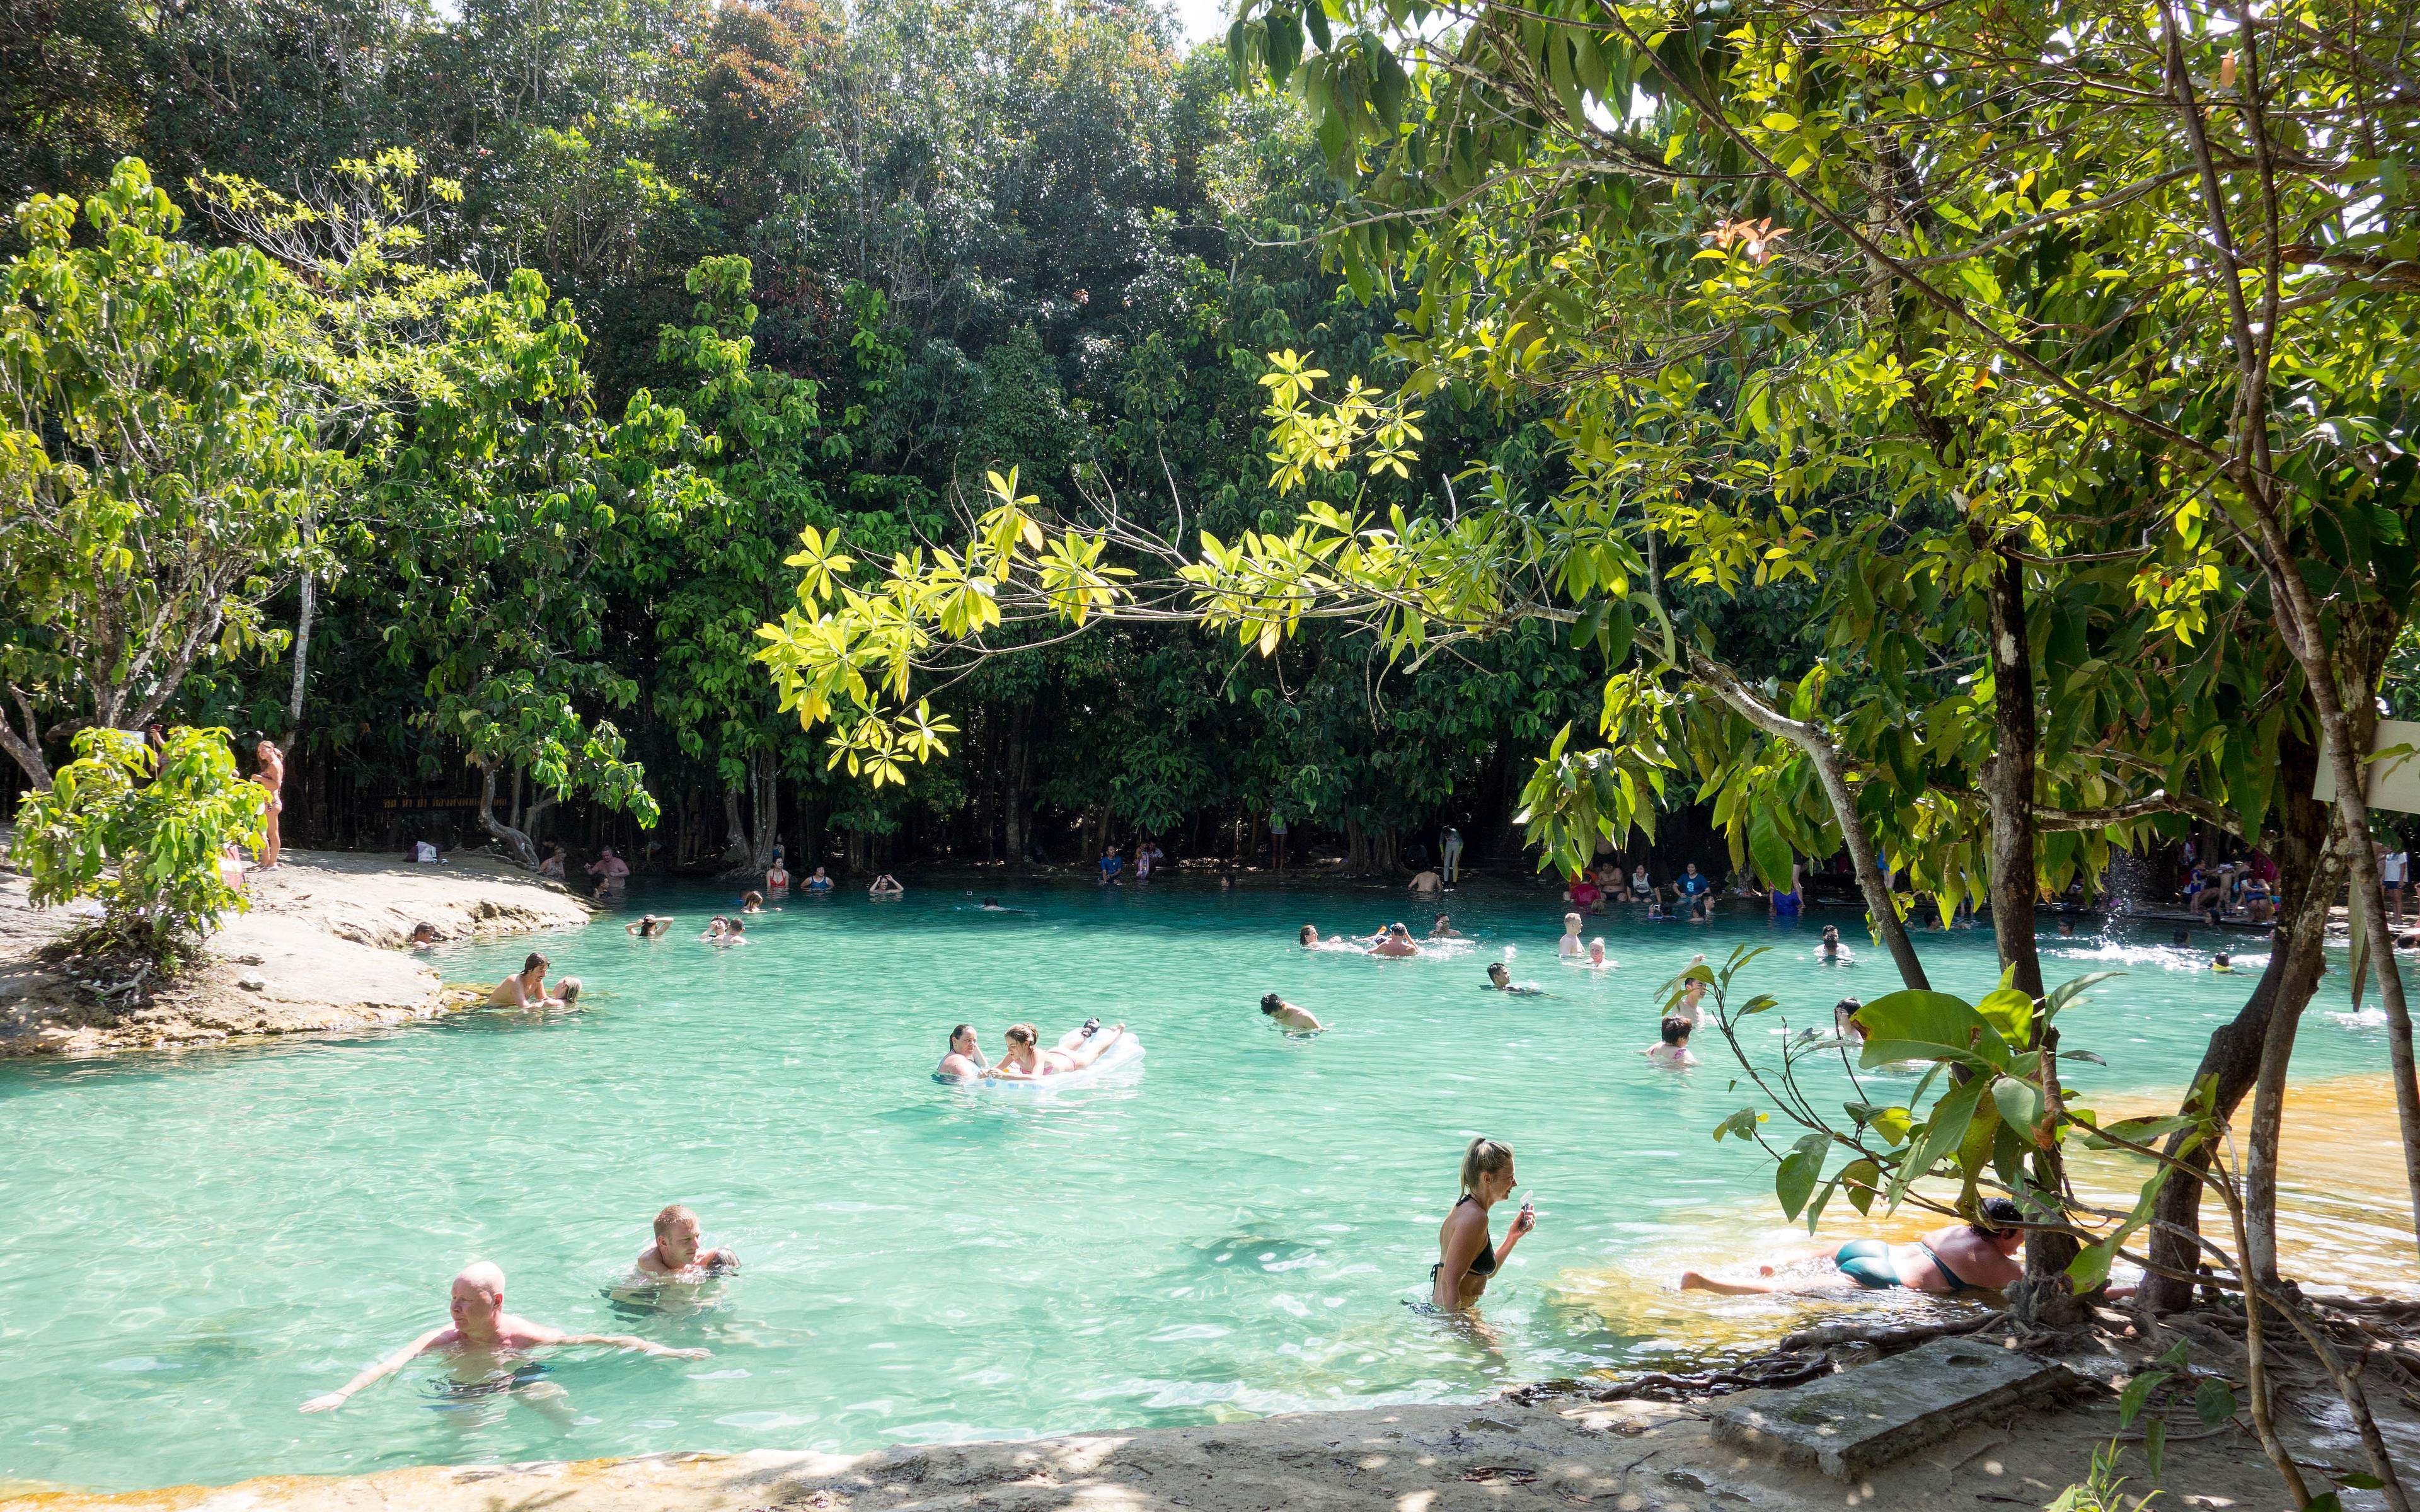 Rumbo hacia Krabi: Emerald pool, blue pool y hot springs